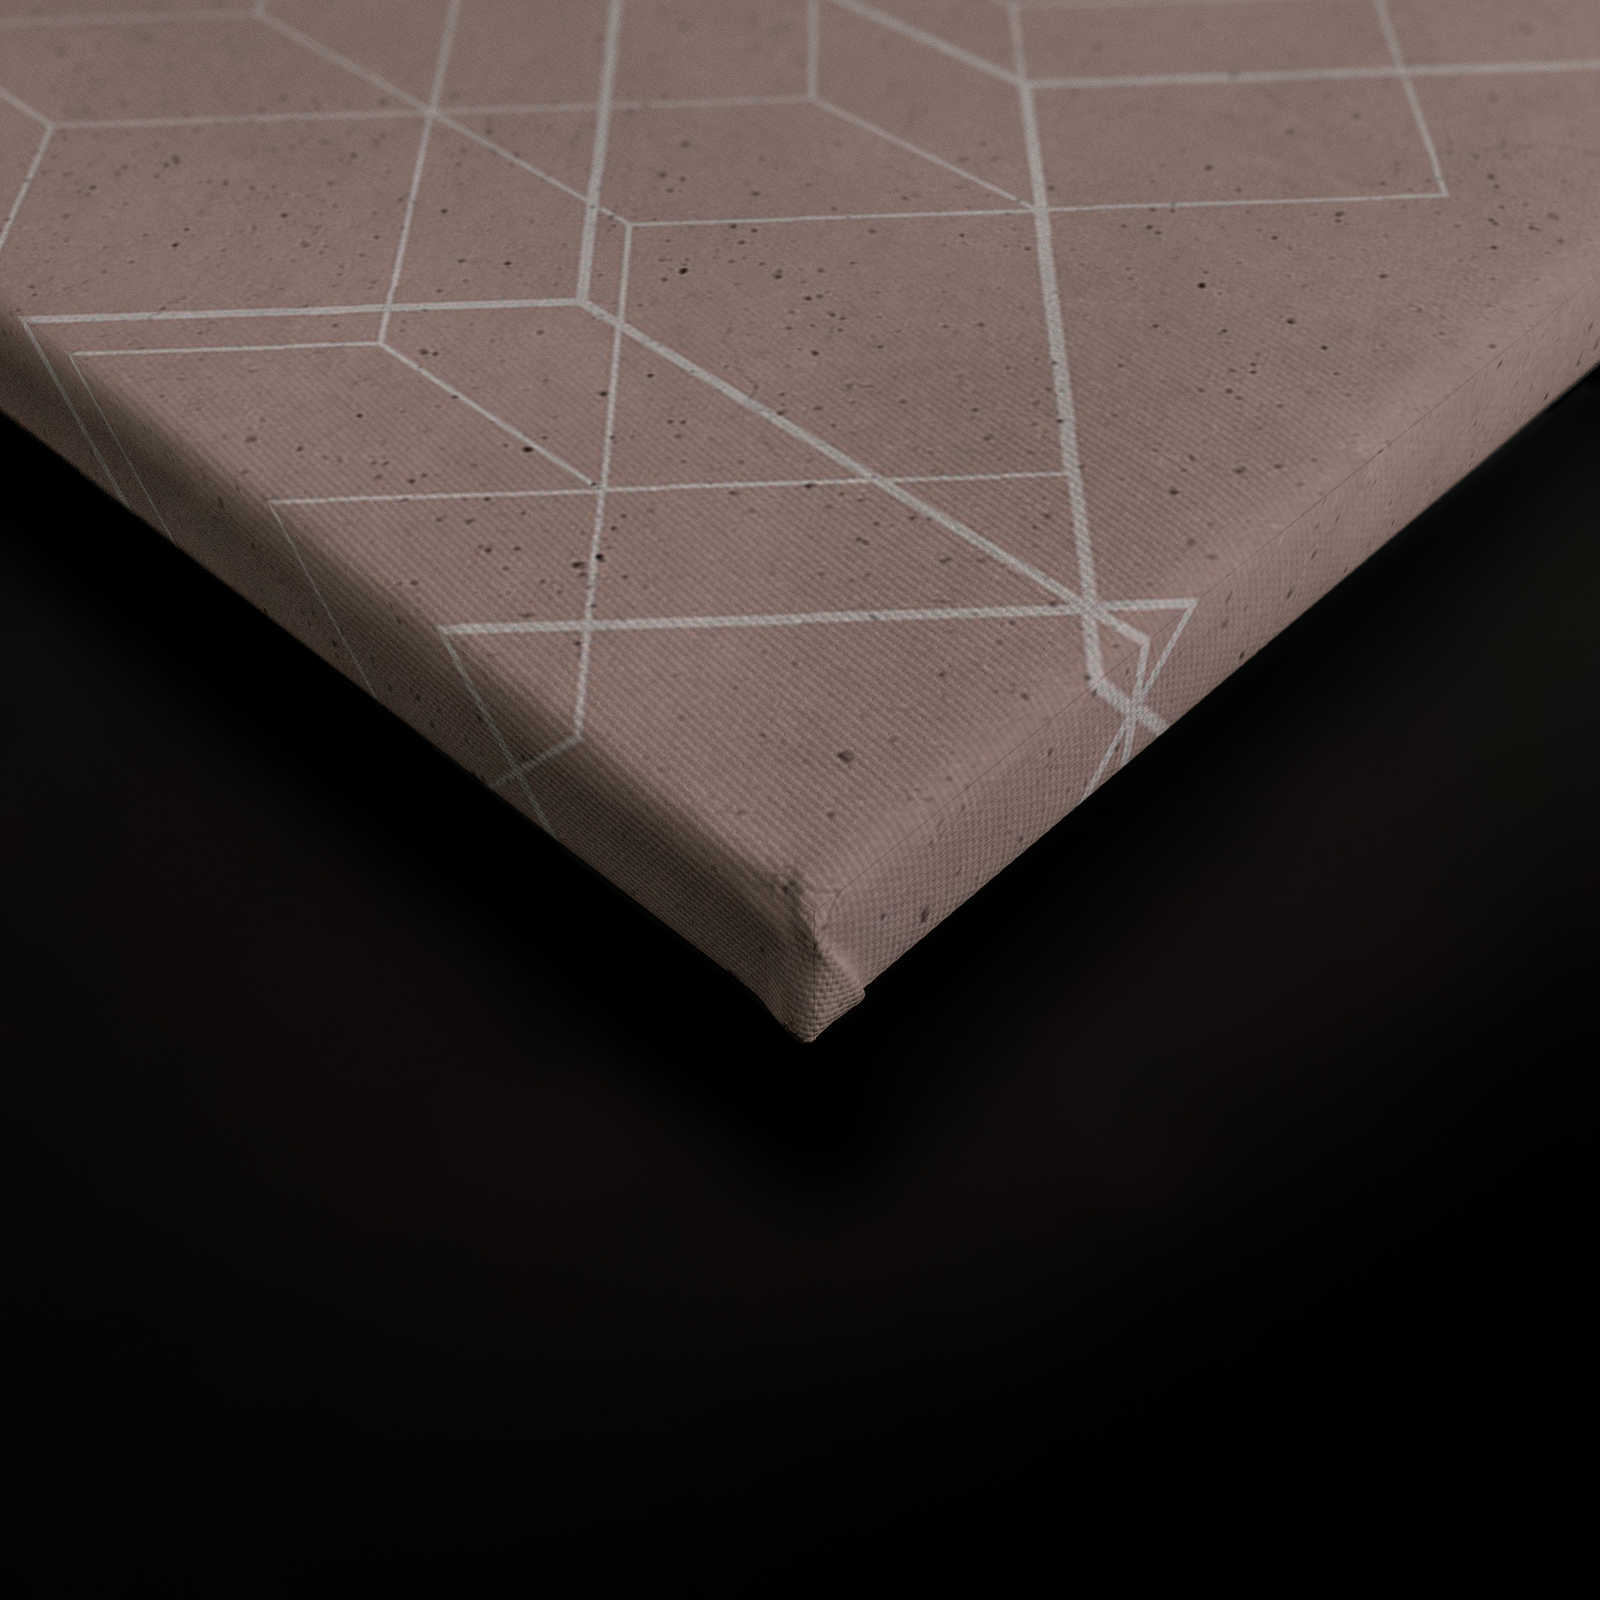             Leinwandbild geometrisches Muster | beige, weiß – 0,90 m x 0,60 m
        